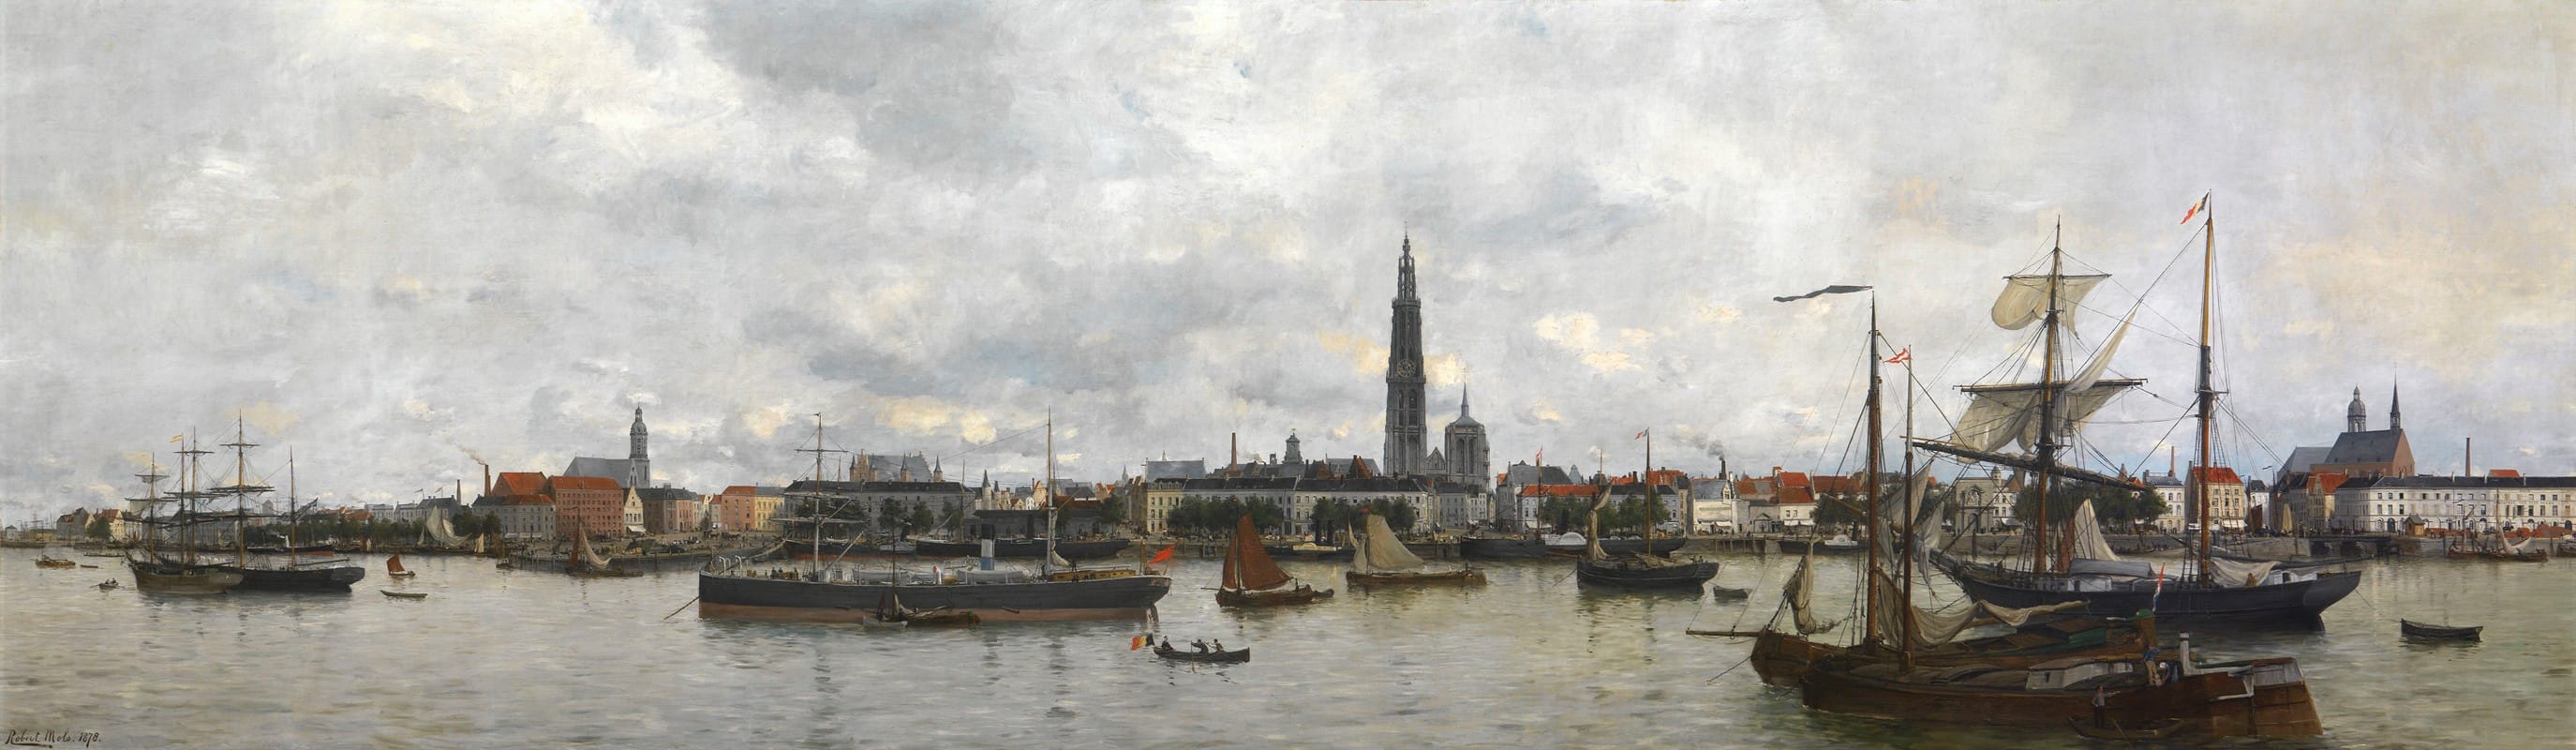 Robert Mols - The Antwerp Waterfront in 1870